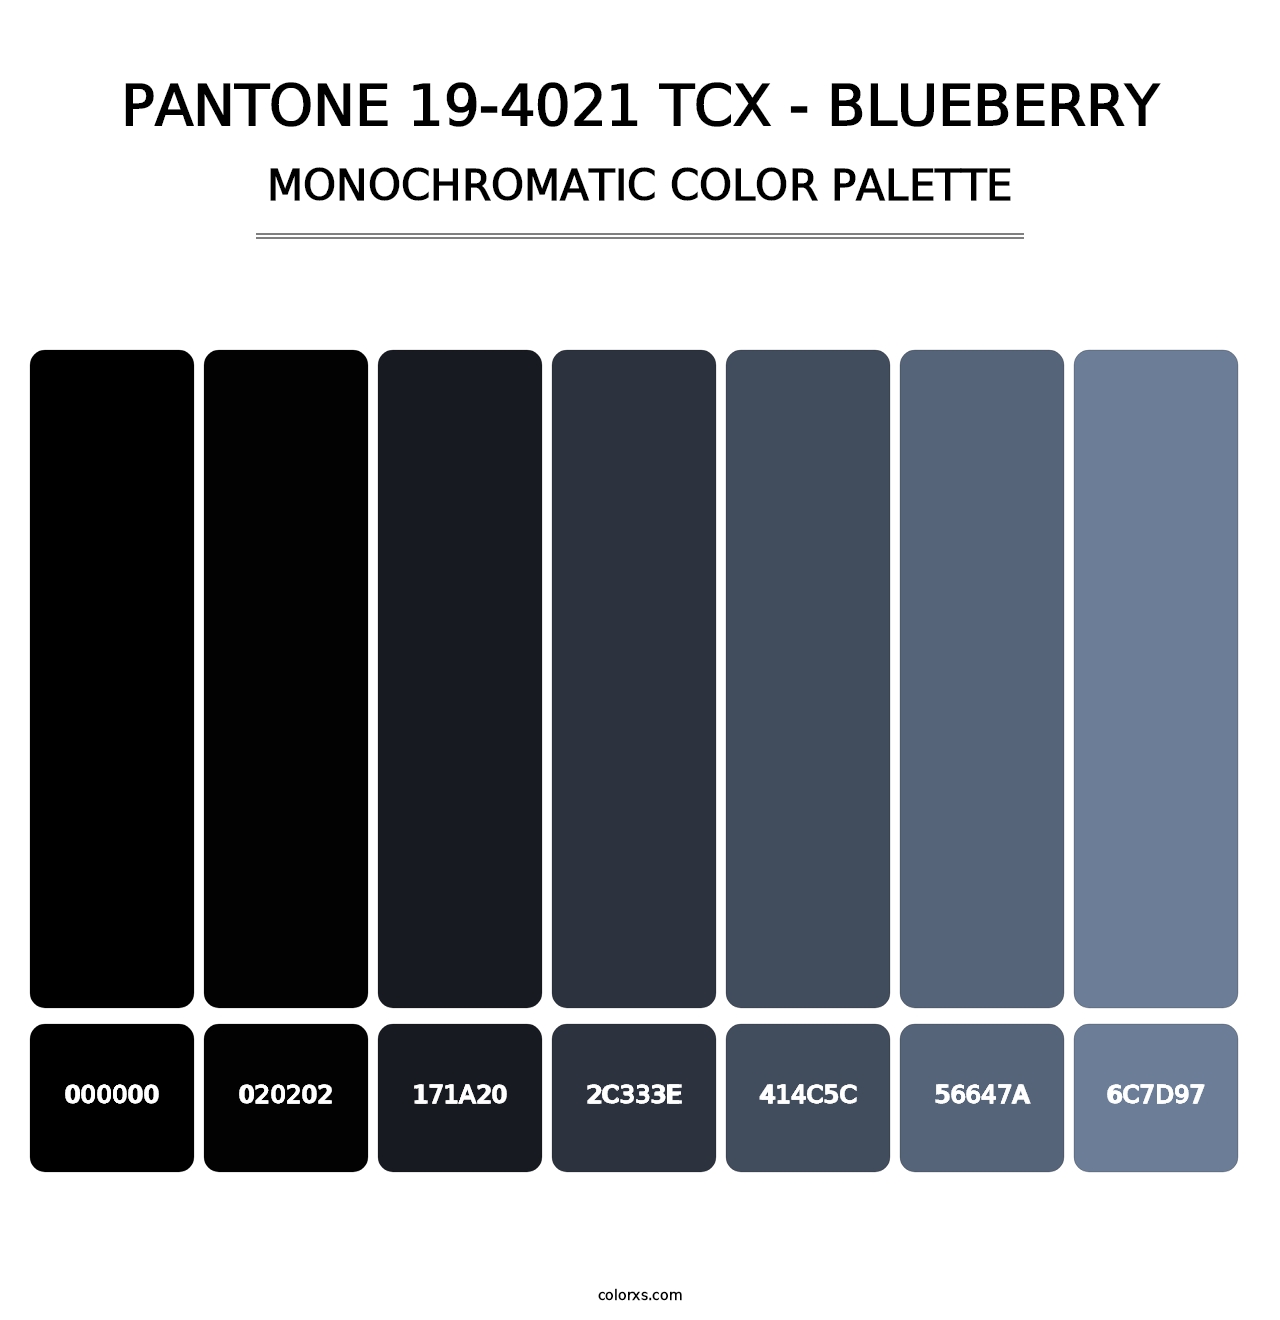 PANTONE 19-4021 TCX - Blueberry - Monochromatic Color Palette